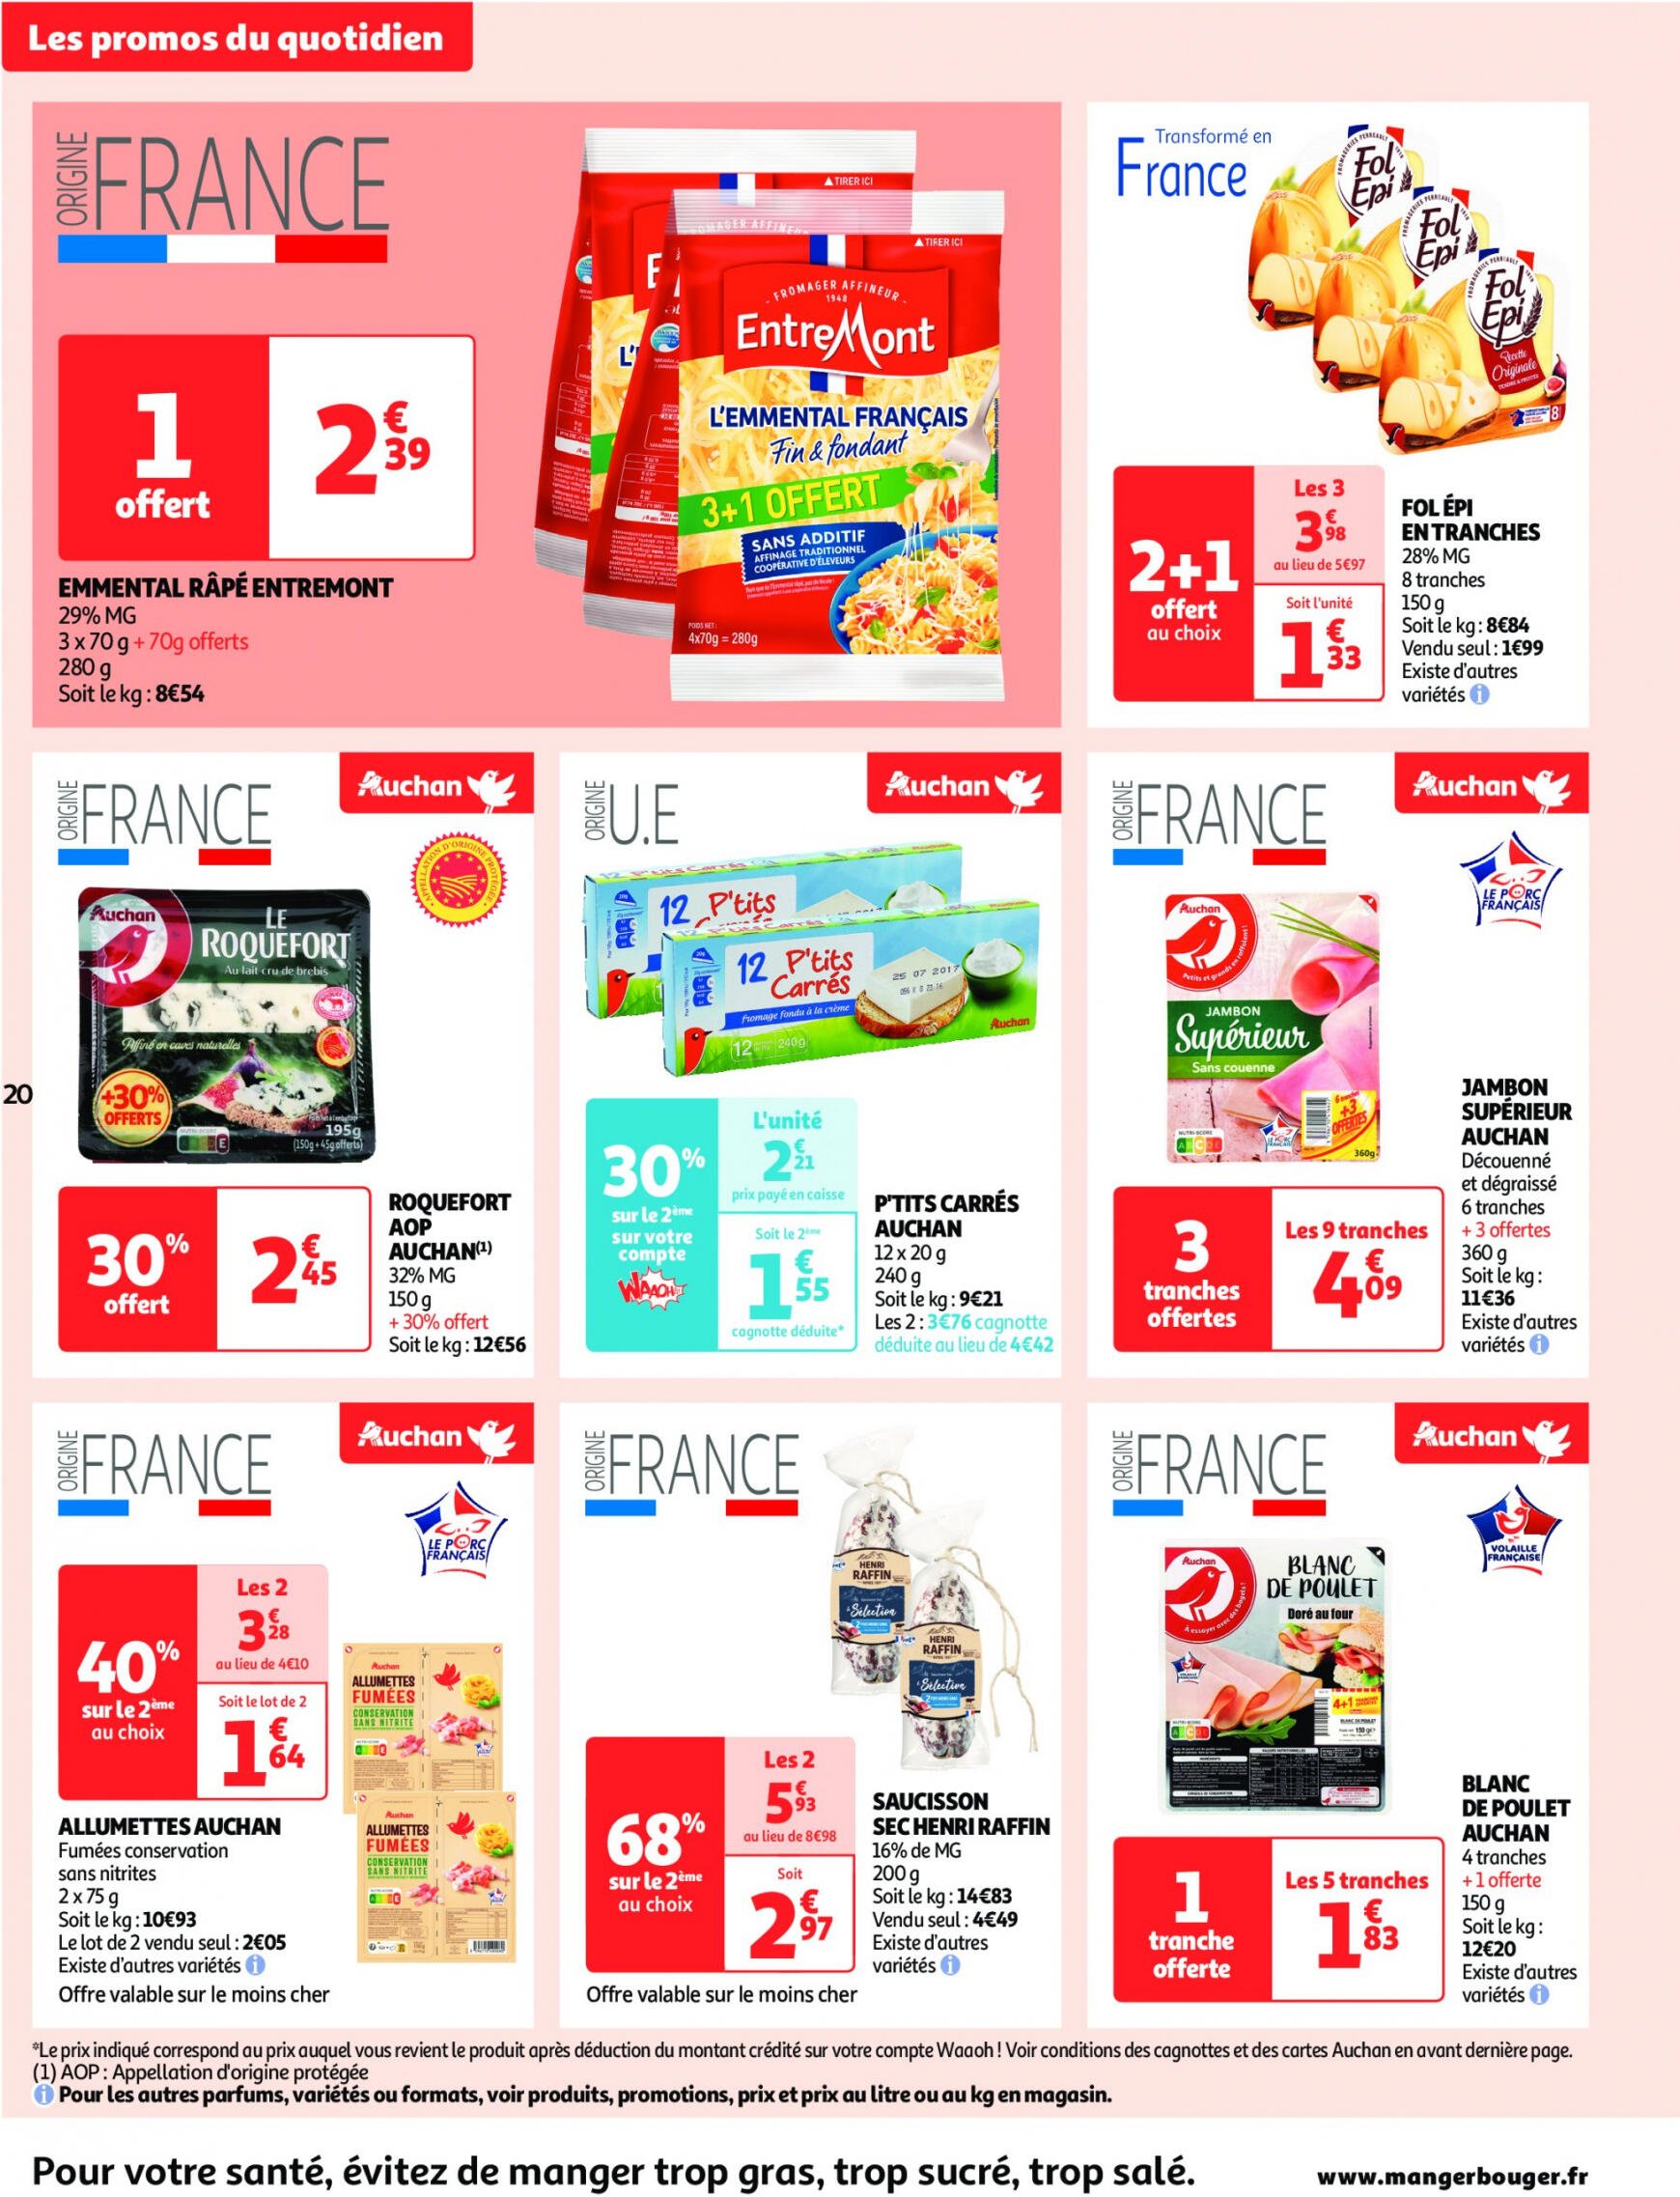 auchan - Auchan supermarché - Faites le plein de bonnes affaires folder huidig 22.05. - 26.05. - page: 20